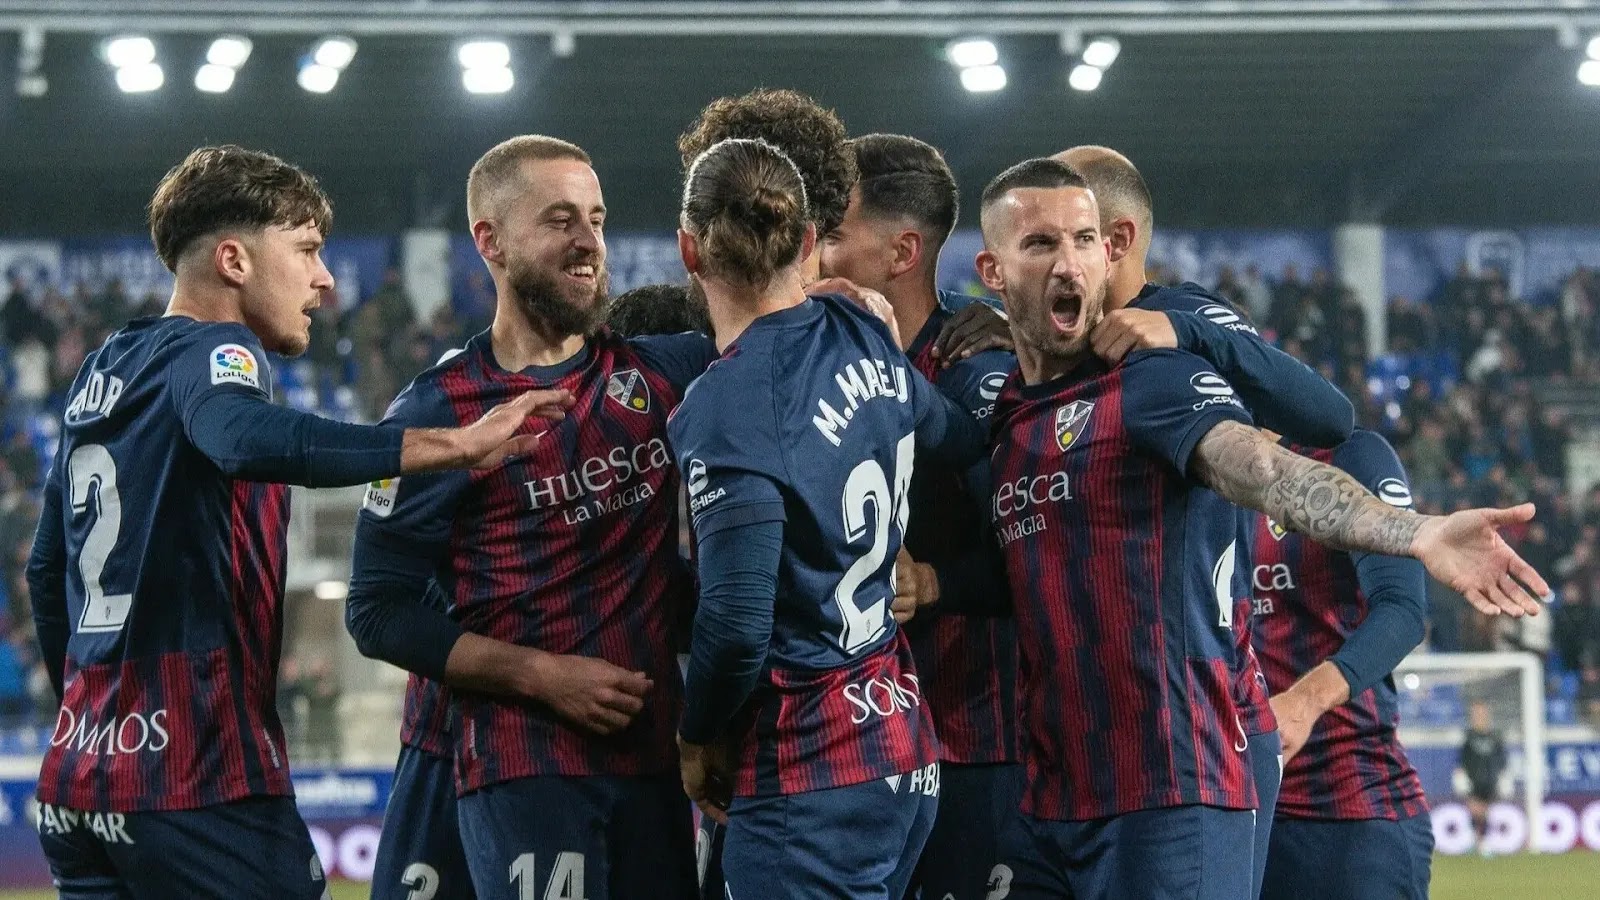 Les joueurs de Huesca célébrant la victoire contre Levante